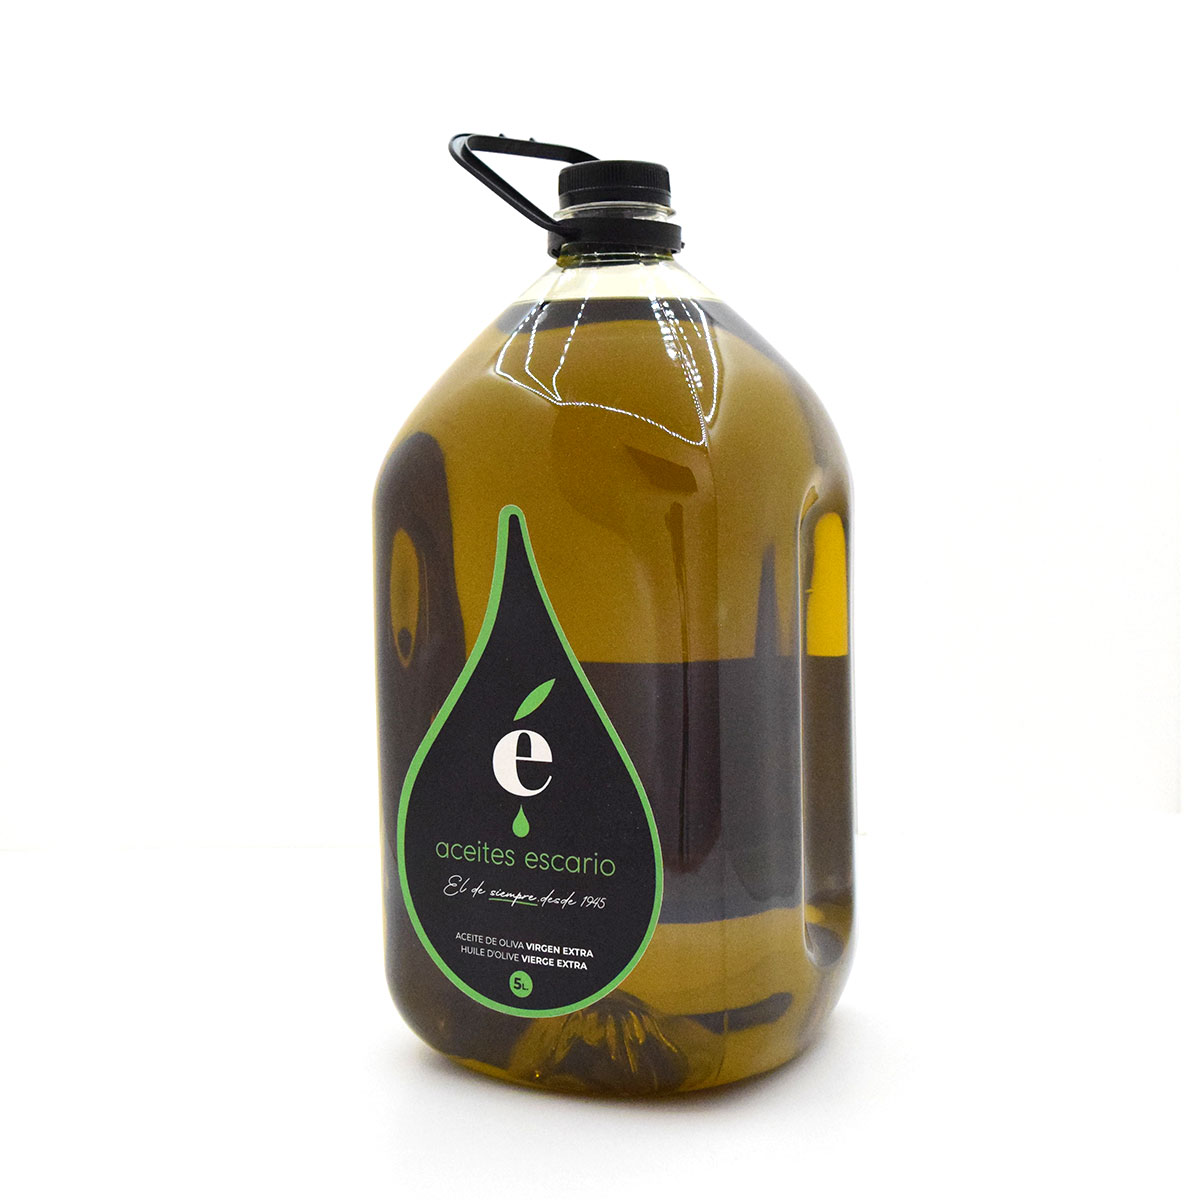 Botella de aceite de oliva Virgen Extra Escario coupage 5 litros